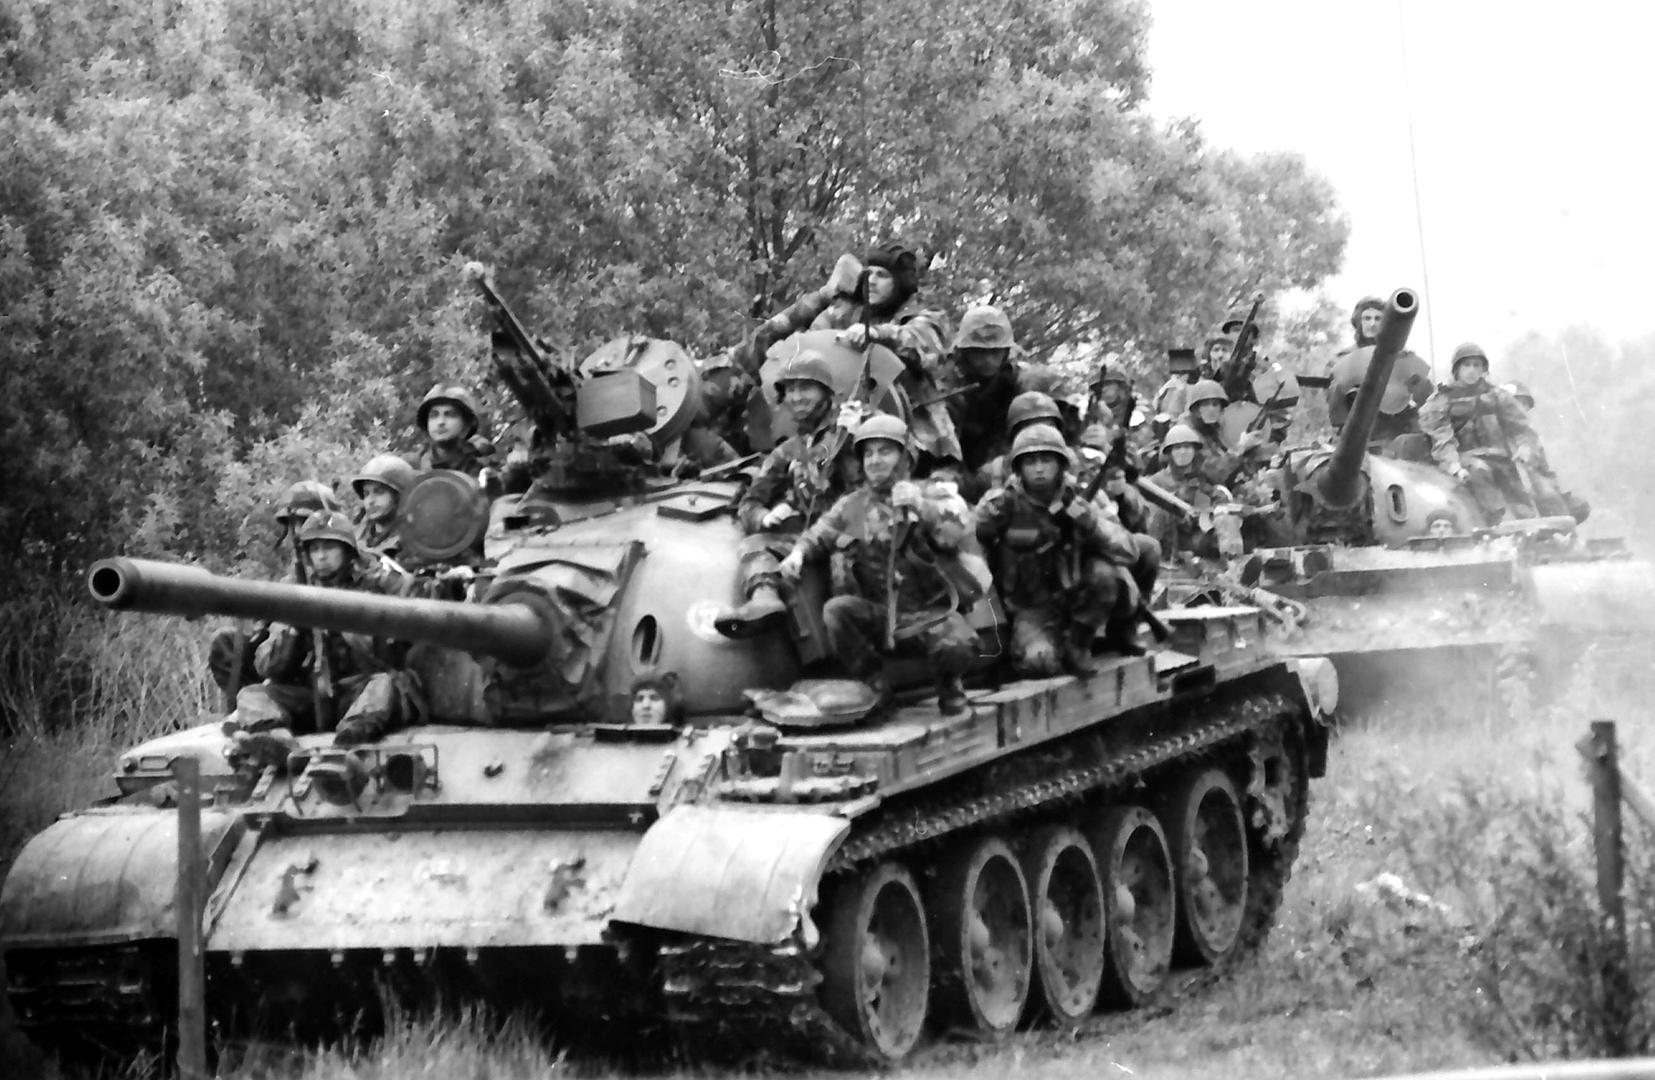 02.05.1995., Okucani - Vojno redarstvena akcija Bljesak kojom je Hrvatska vojska krenula u oslobadjanje okupiranih dijelova zapadne Slavonije. rPhoto: Davor Visnjic/PIXSELL